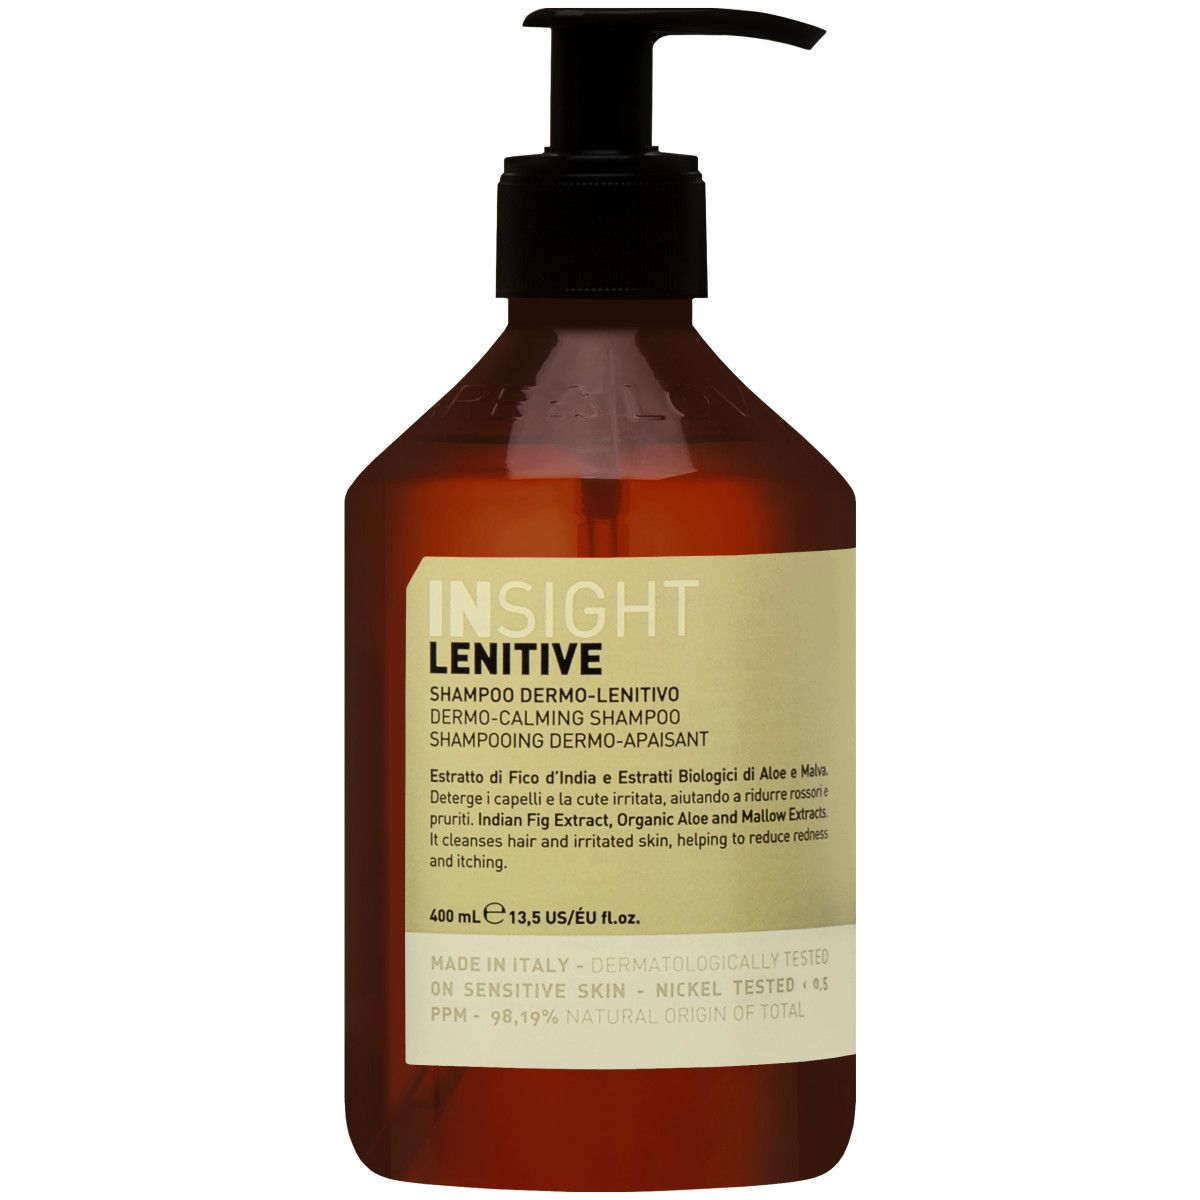 Insight Lenitive Shampoo - szampon przeznaczony dla wrażliwej skóry głowy, 400ml